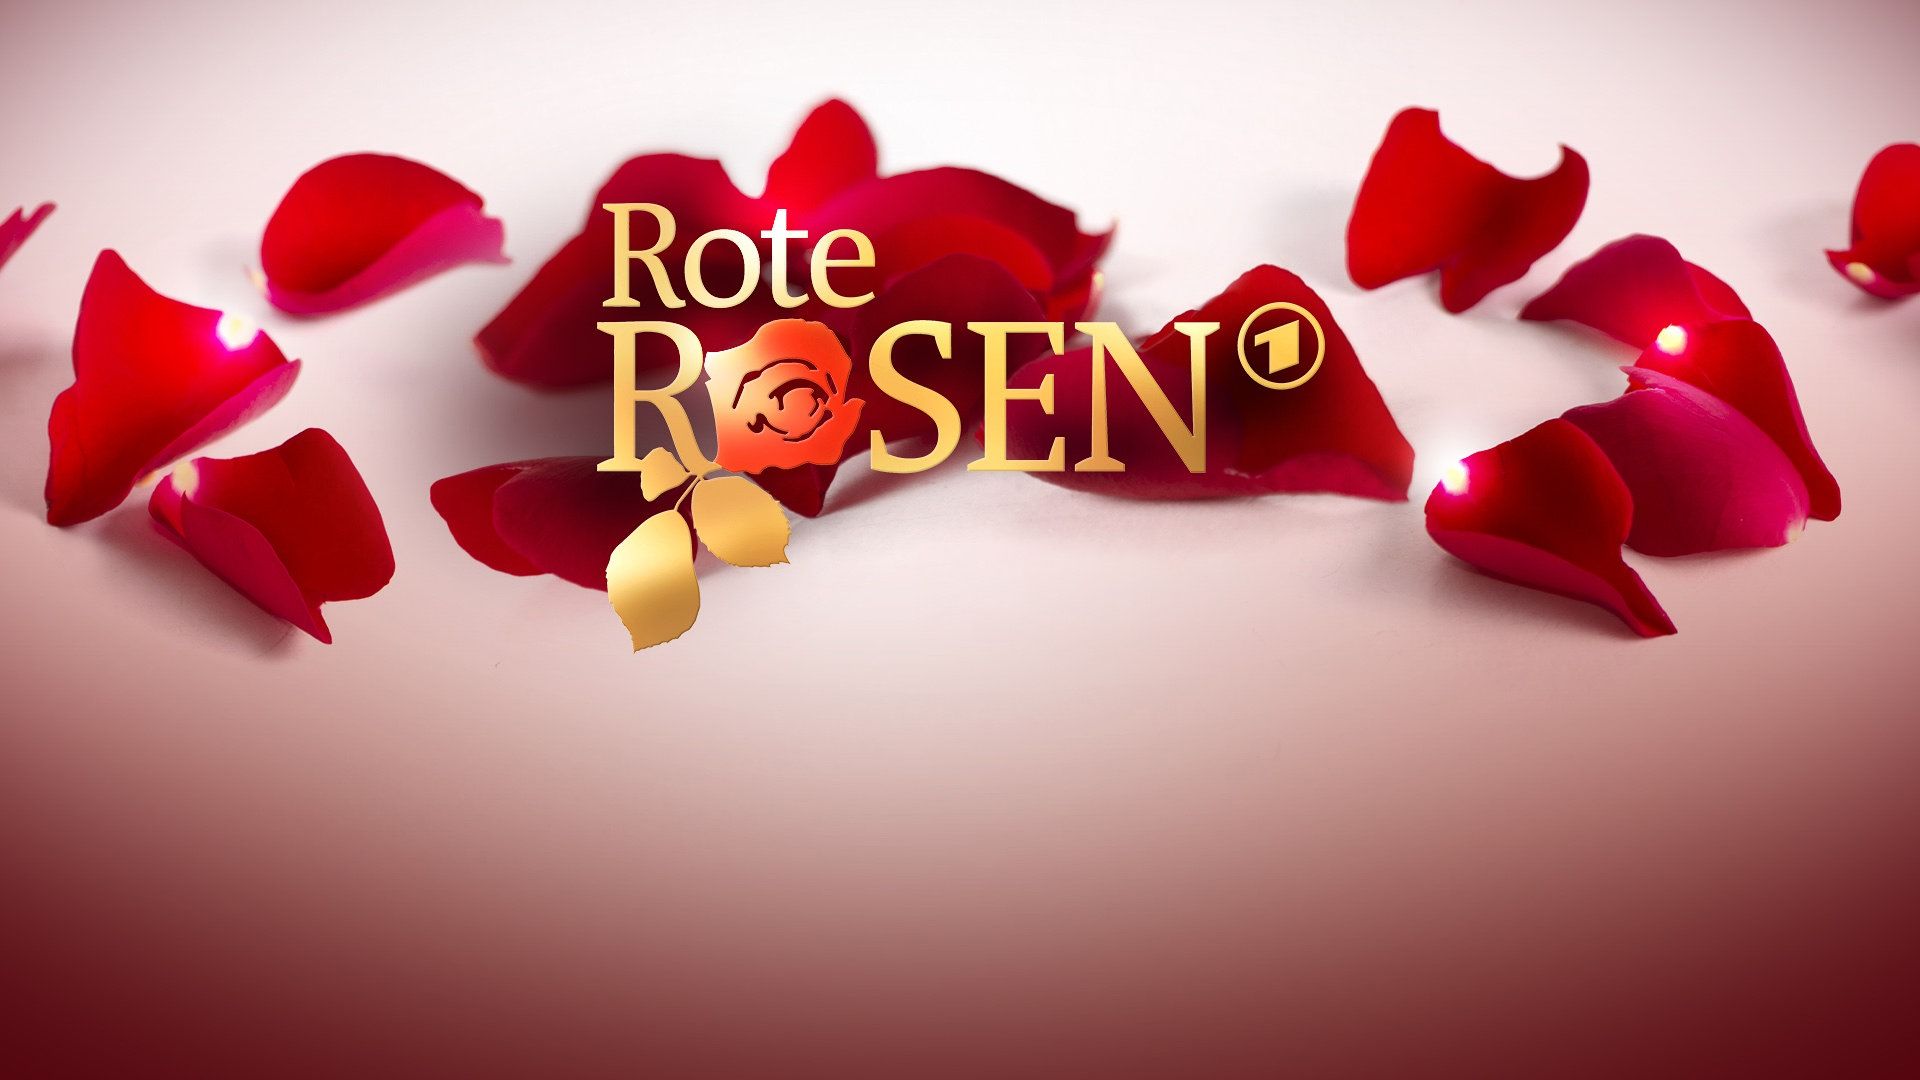 Rote Rosen (3895) - Das Erste | programm.ARD.de